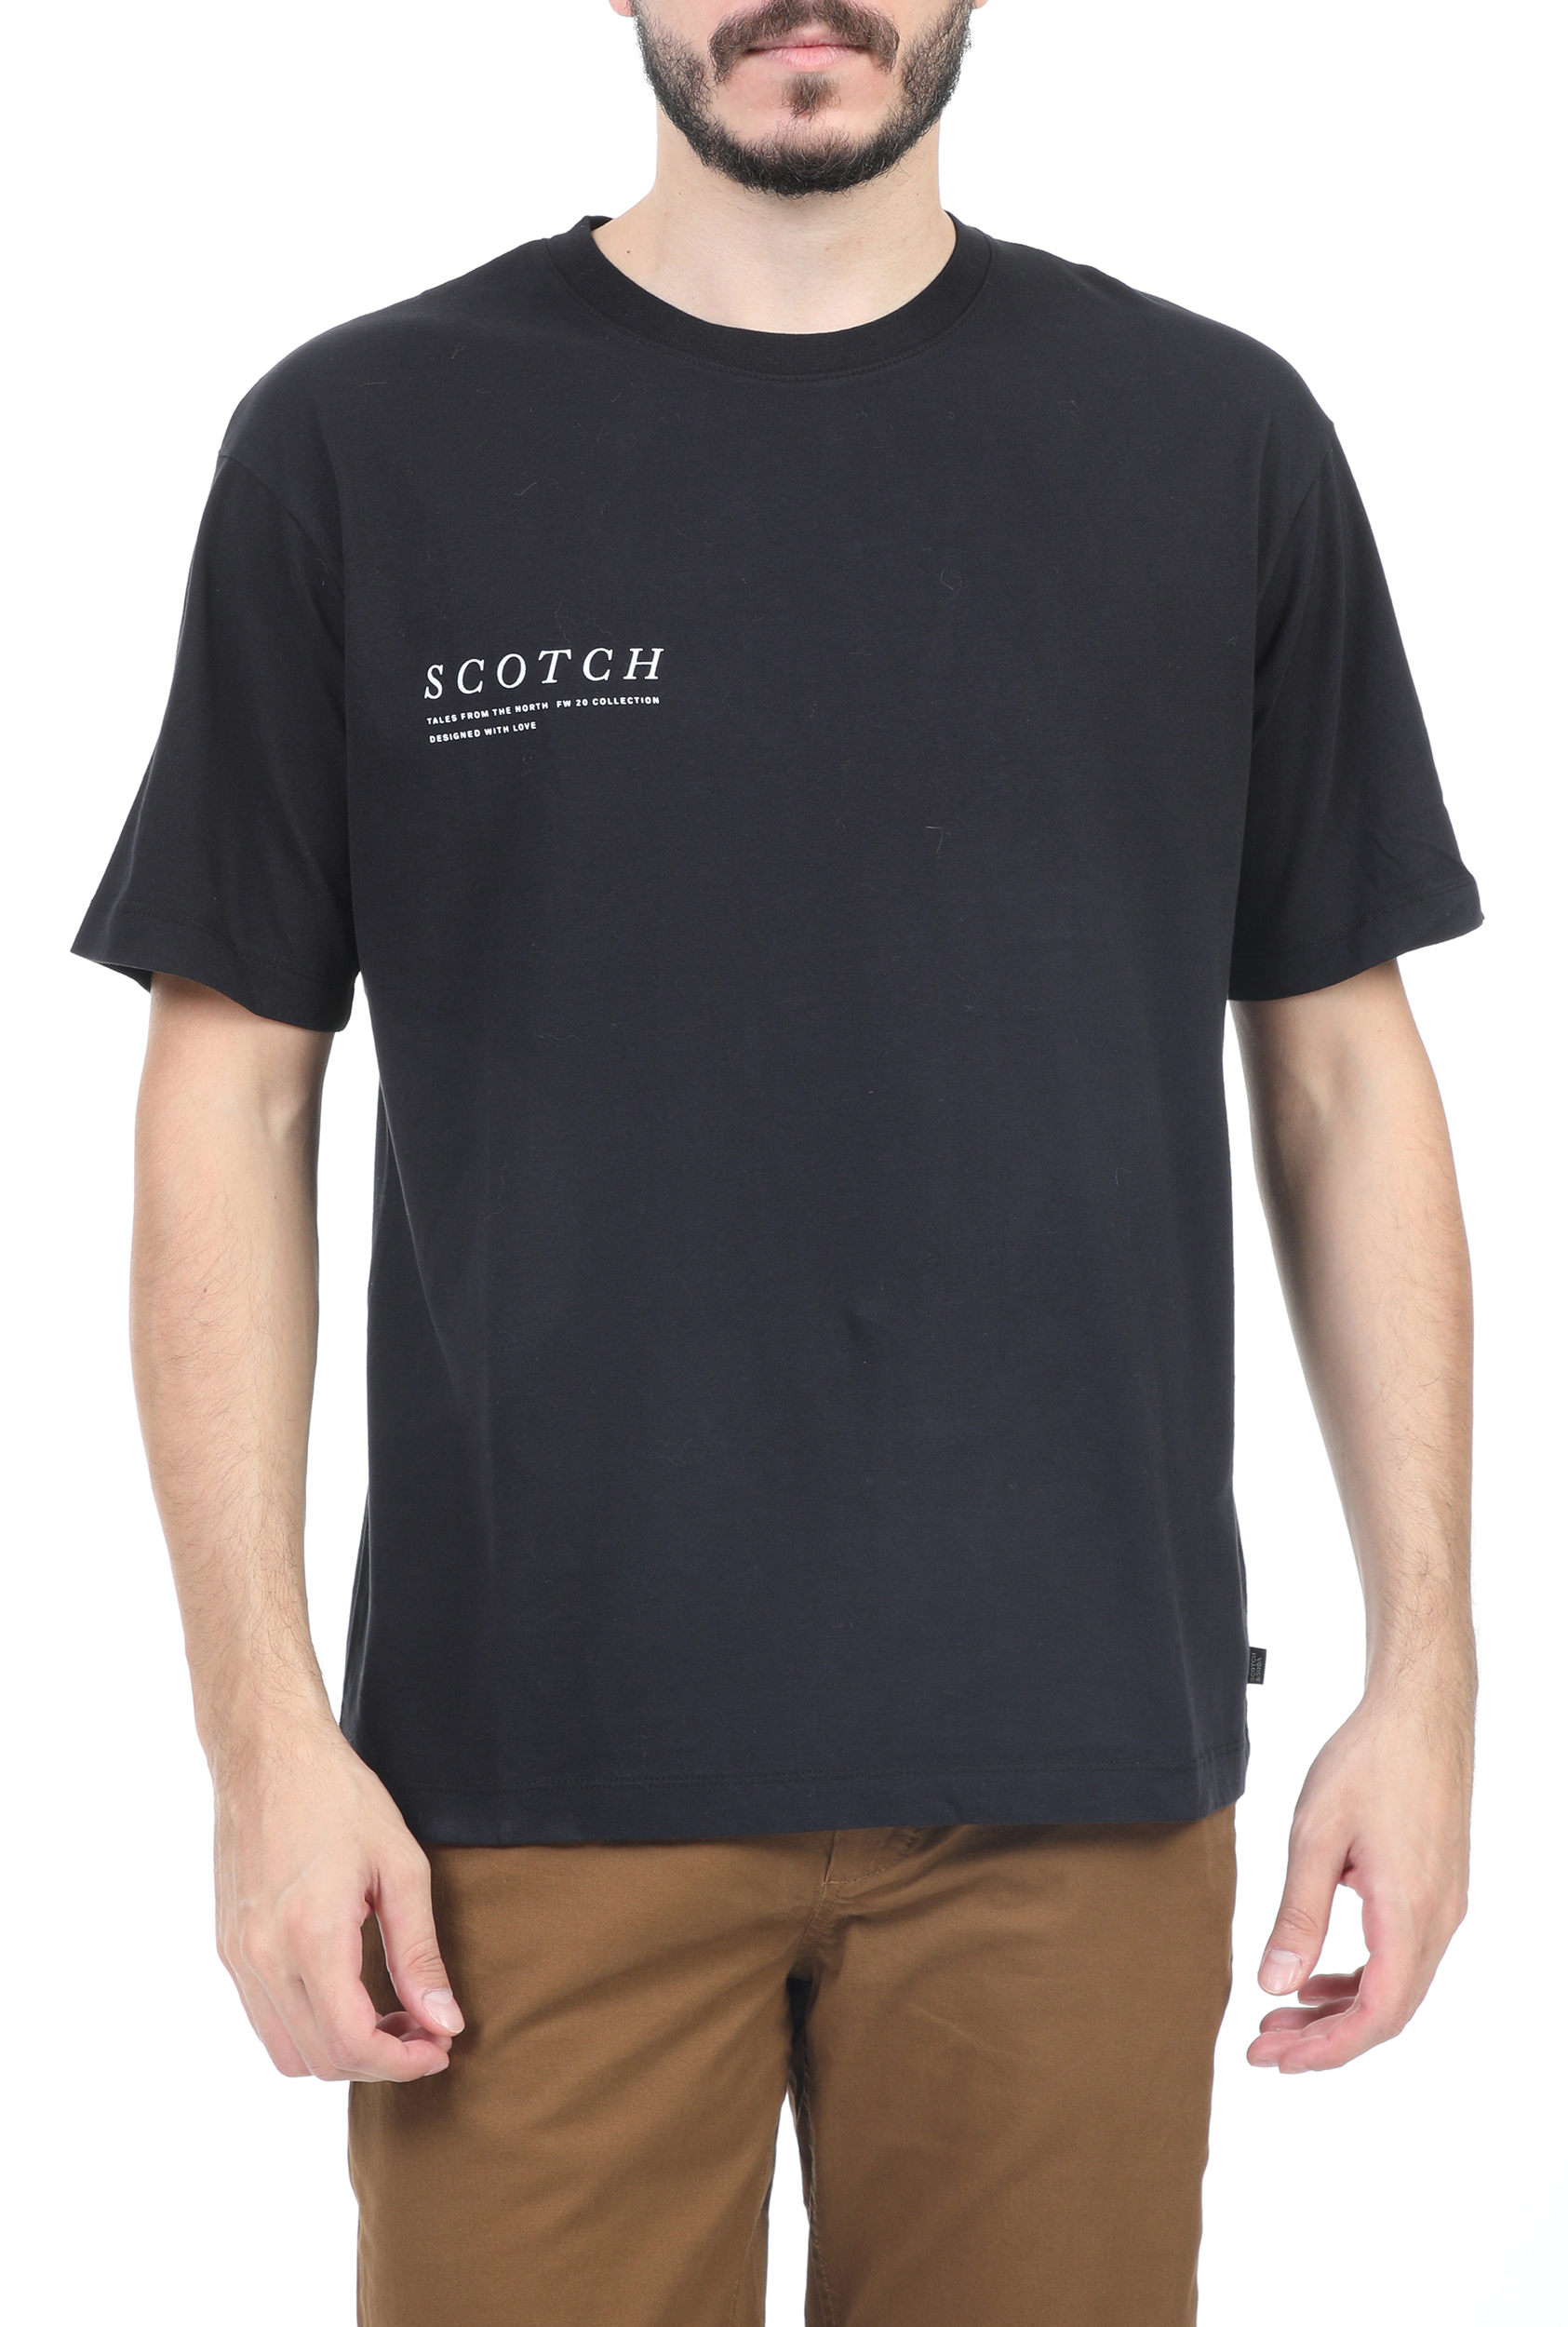 Ανδρικά/Ρούχα/Μπλούζες/Κοντομάνικες SCOTCH & SODA - Ανδρικό t-shirt SCOTCH & SODA μαύρο